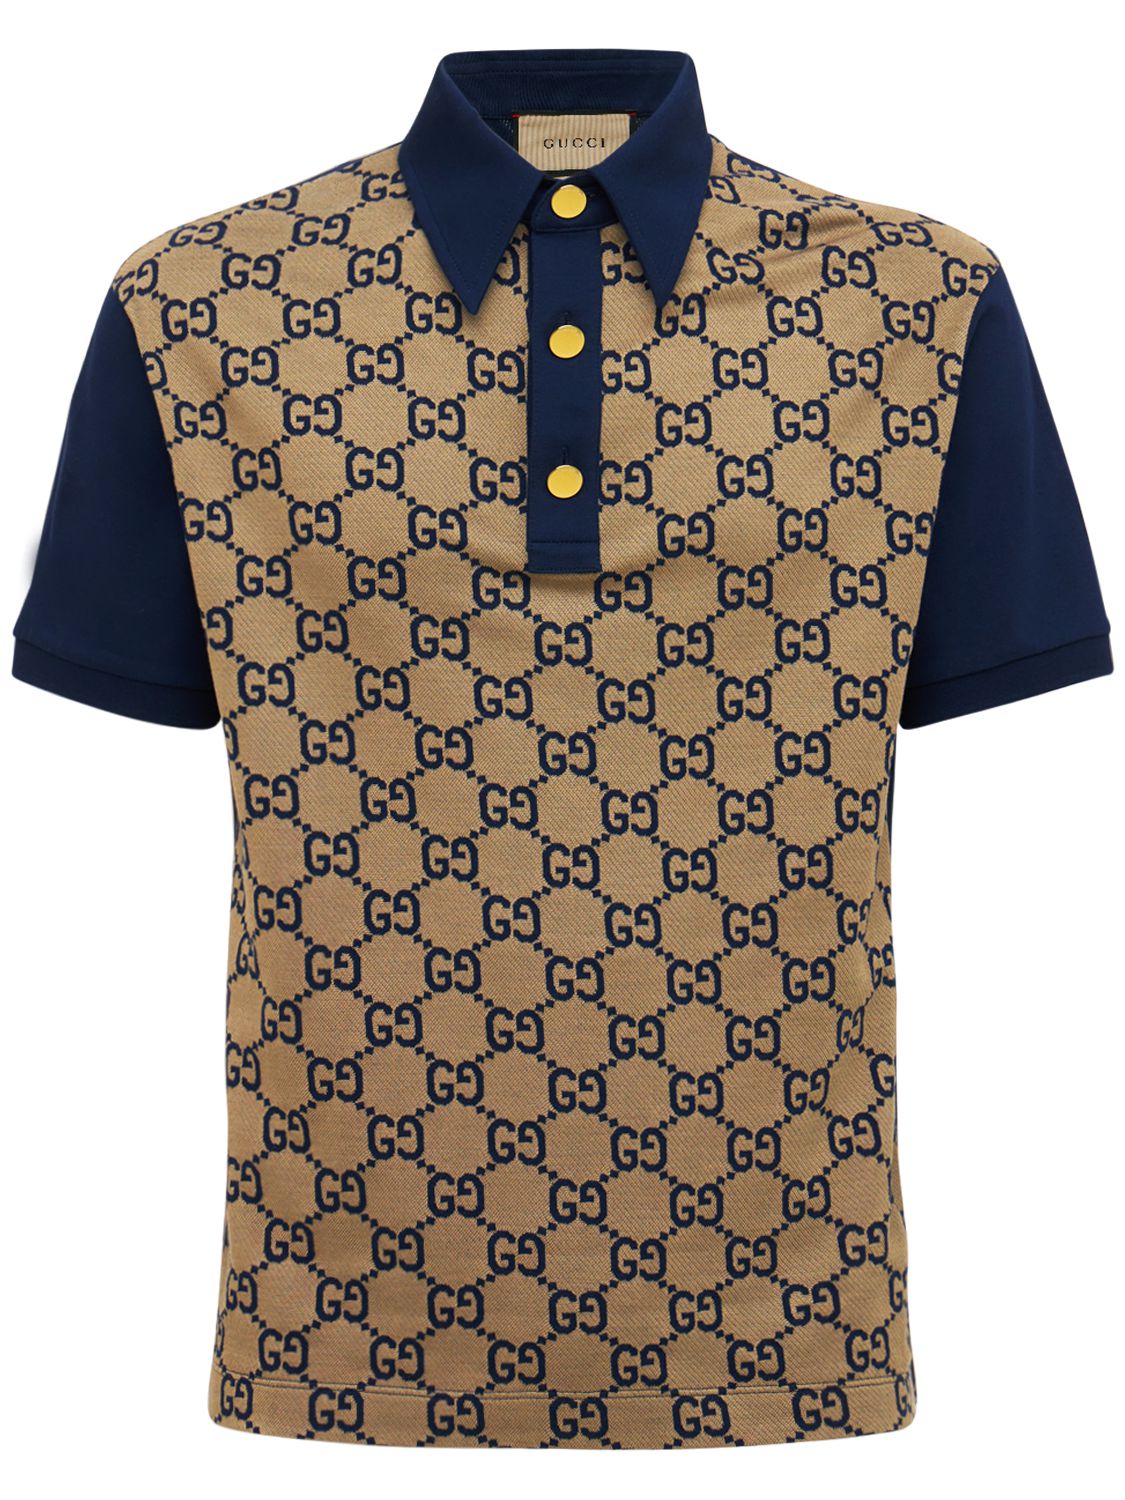 Maxi Gg Silk & Cotton Polo Shirt - GUCCI - Modalova